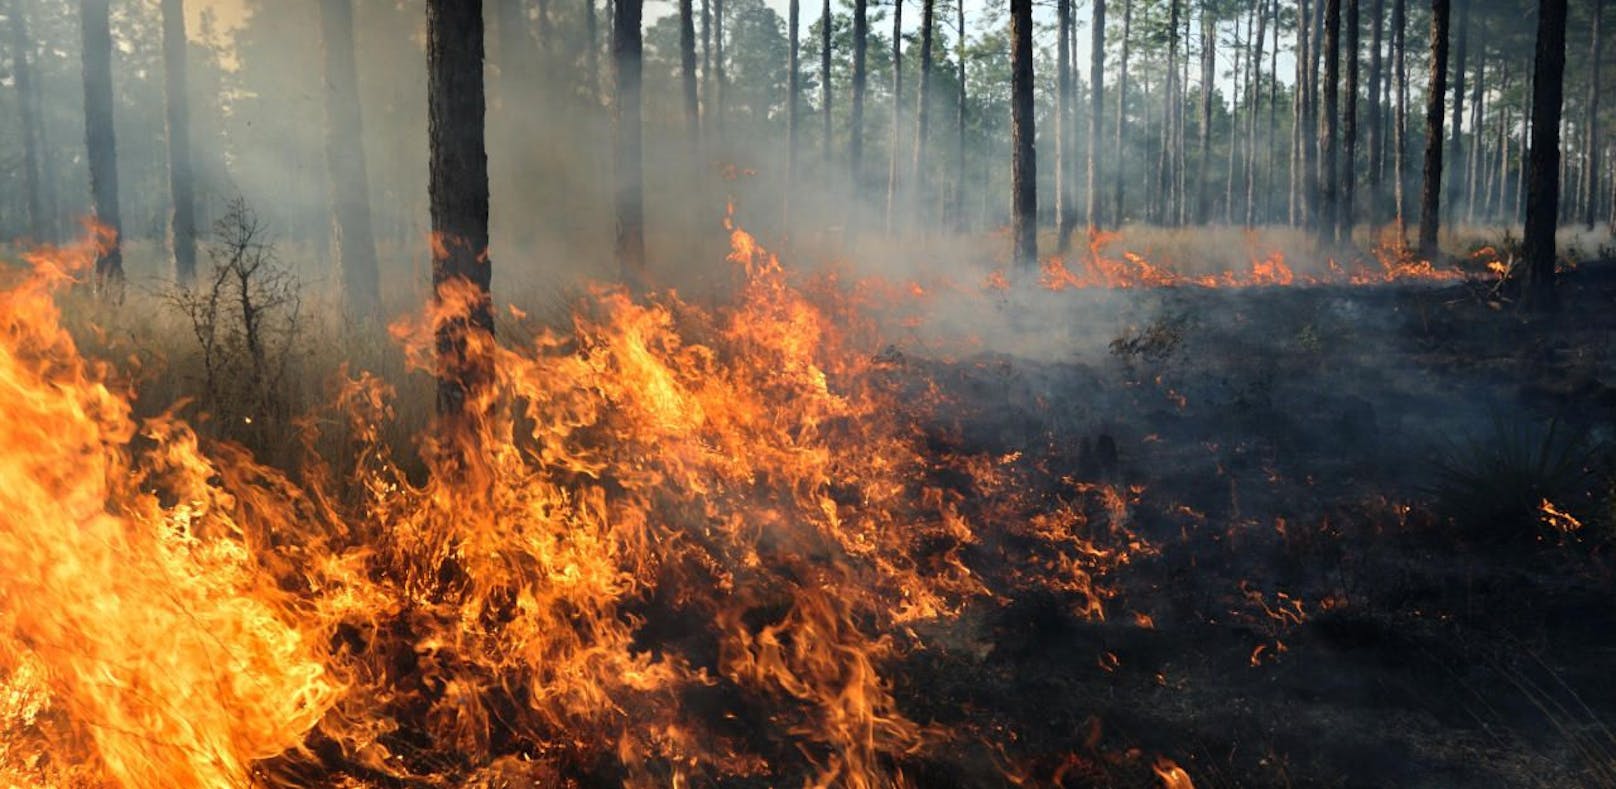 Gefahr von Waldbränden ist in NÖ groß, hohe Strafen drohen.